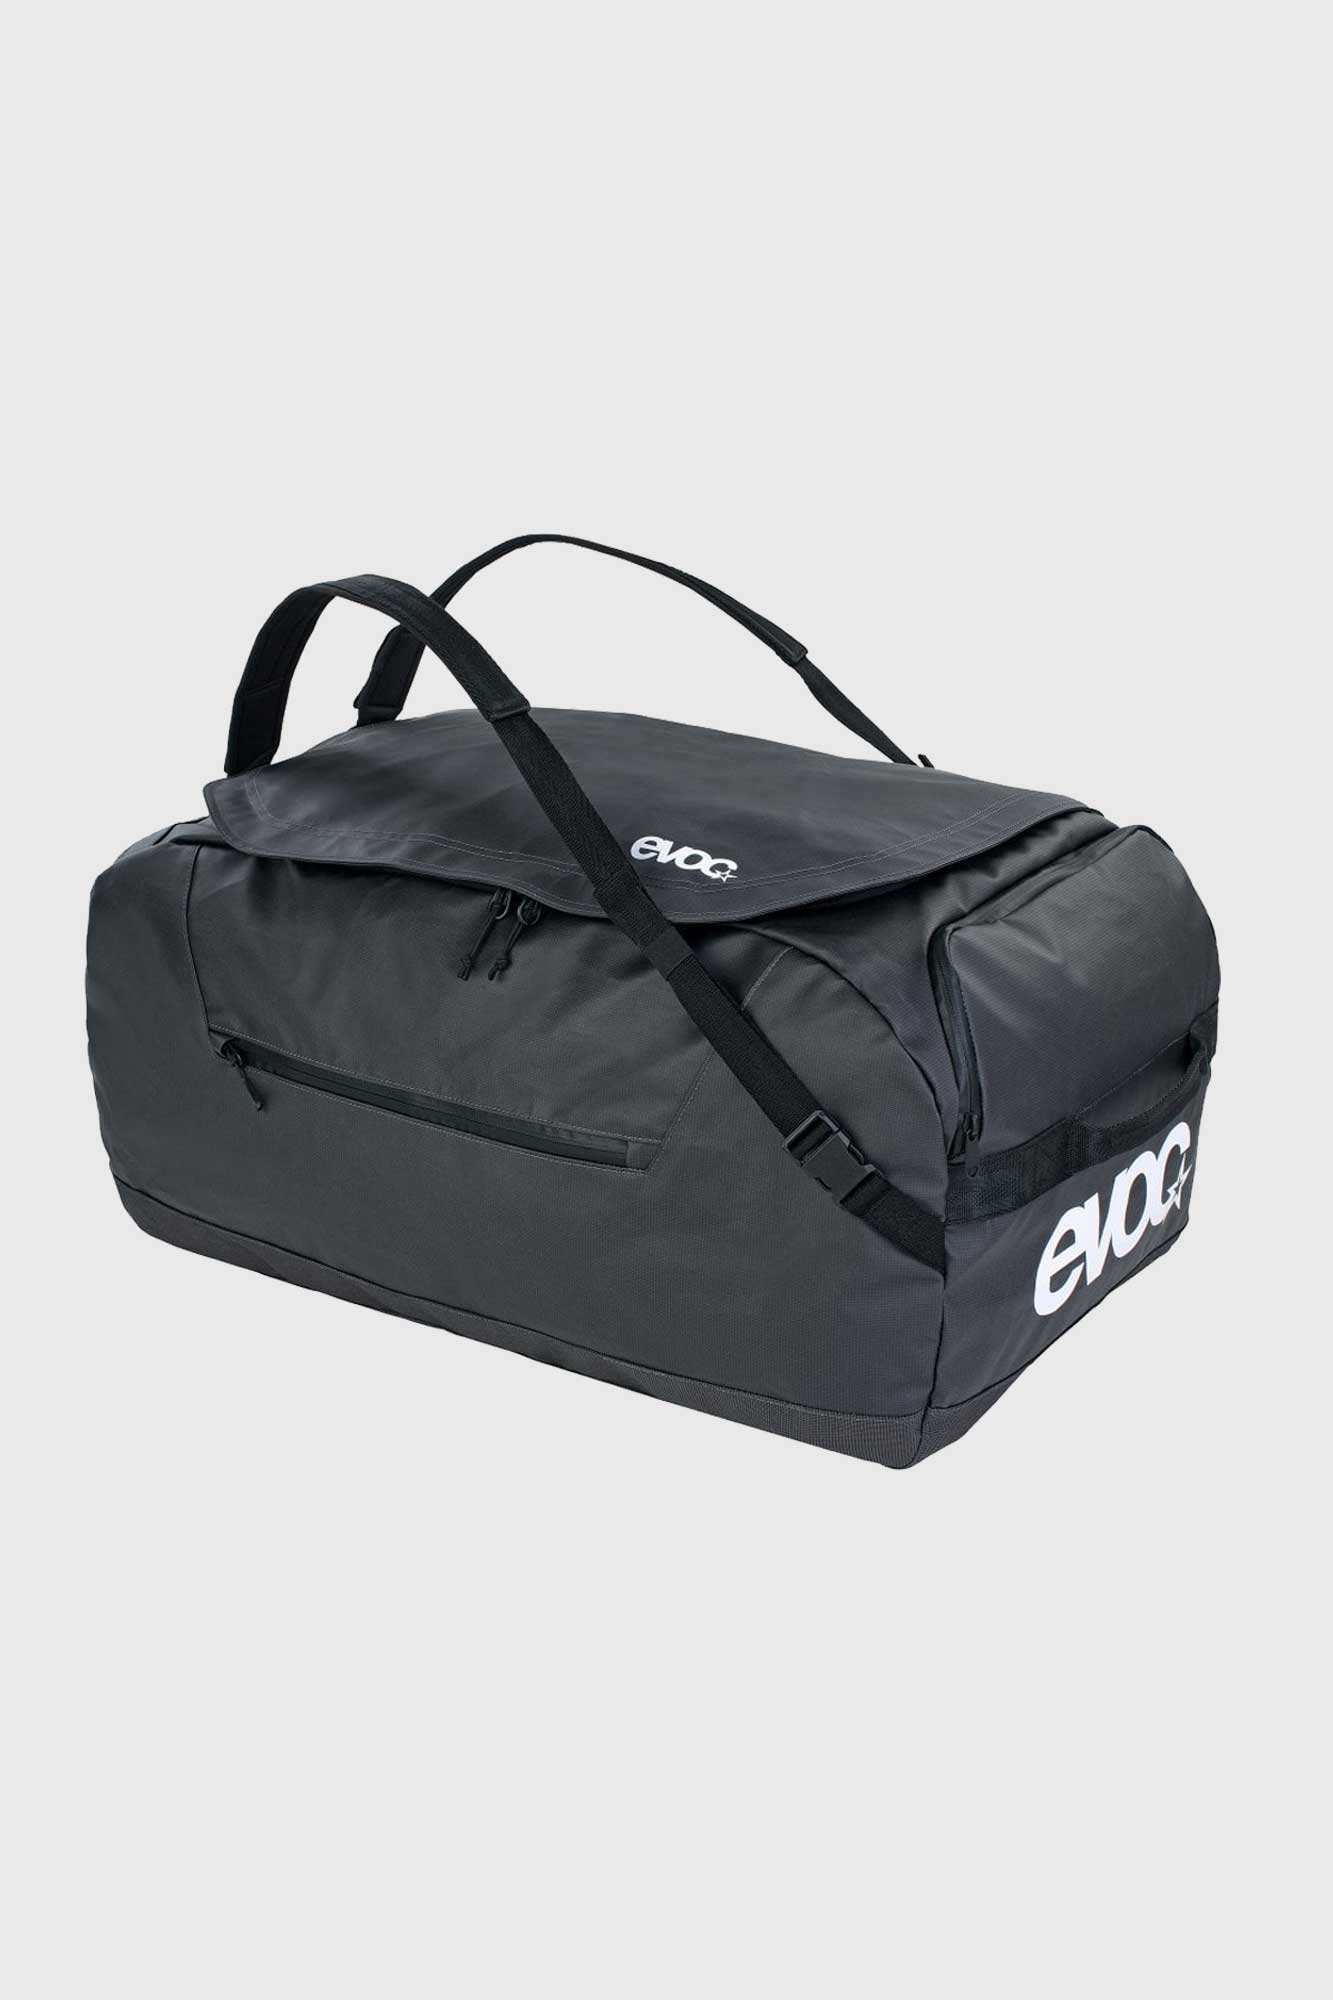 Evoc Duffle Bag 100L - Carbon Grey